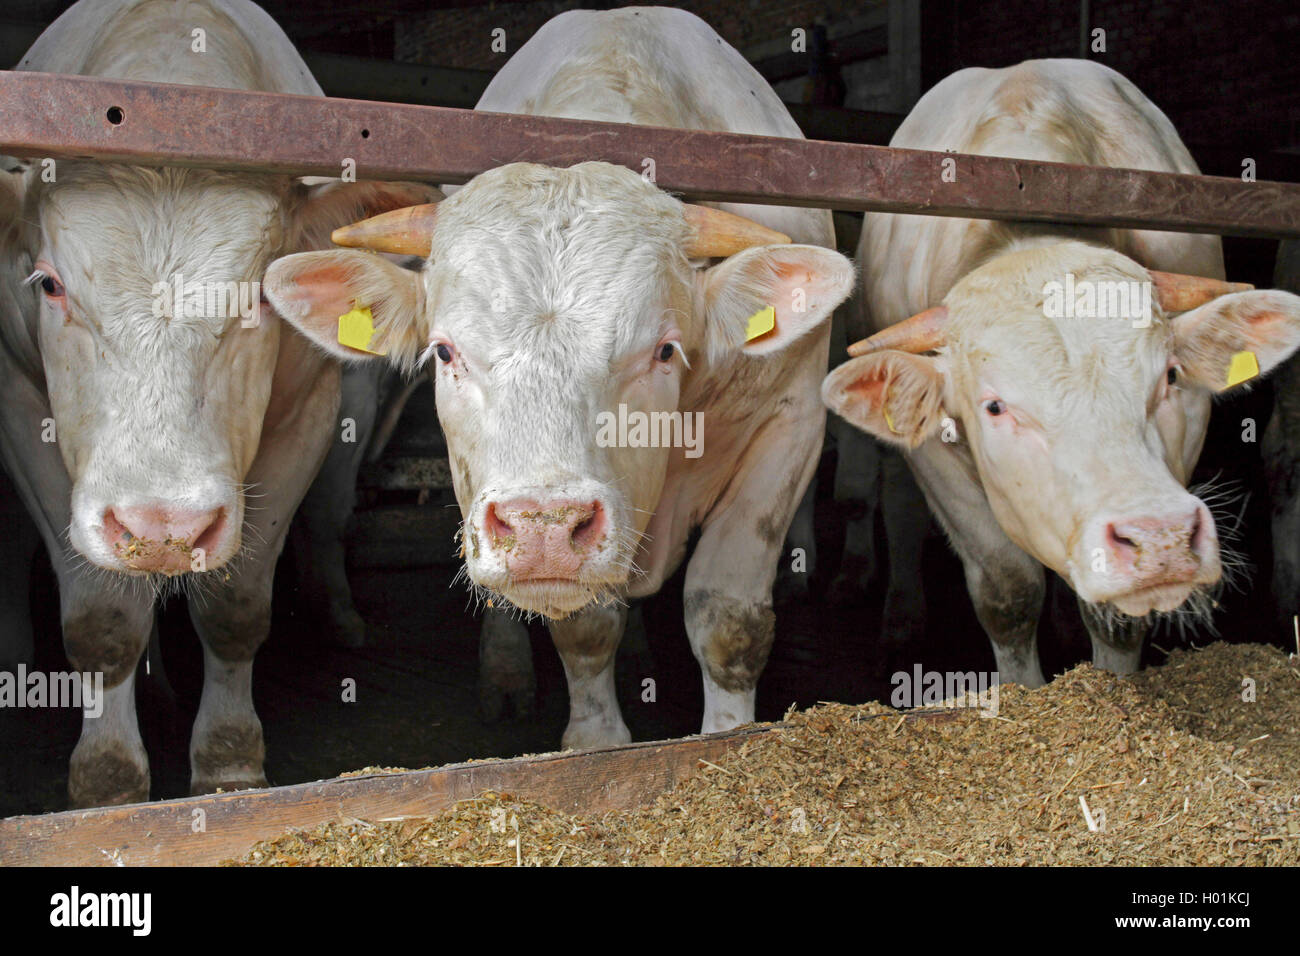 Charolais ganado (Bos primigenius f. taurus), tres cabezas de ganado Charolais en el establo, vista frontal, Alemania Foto de stock